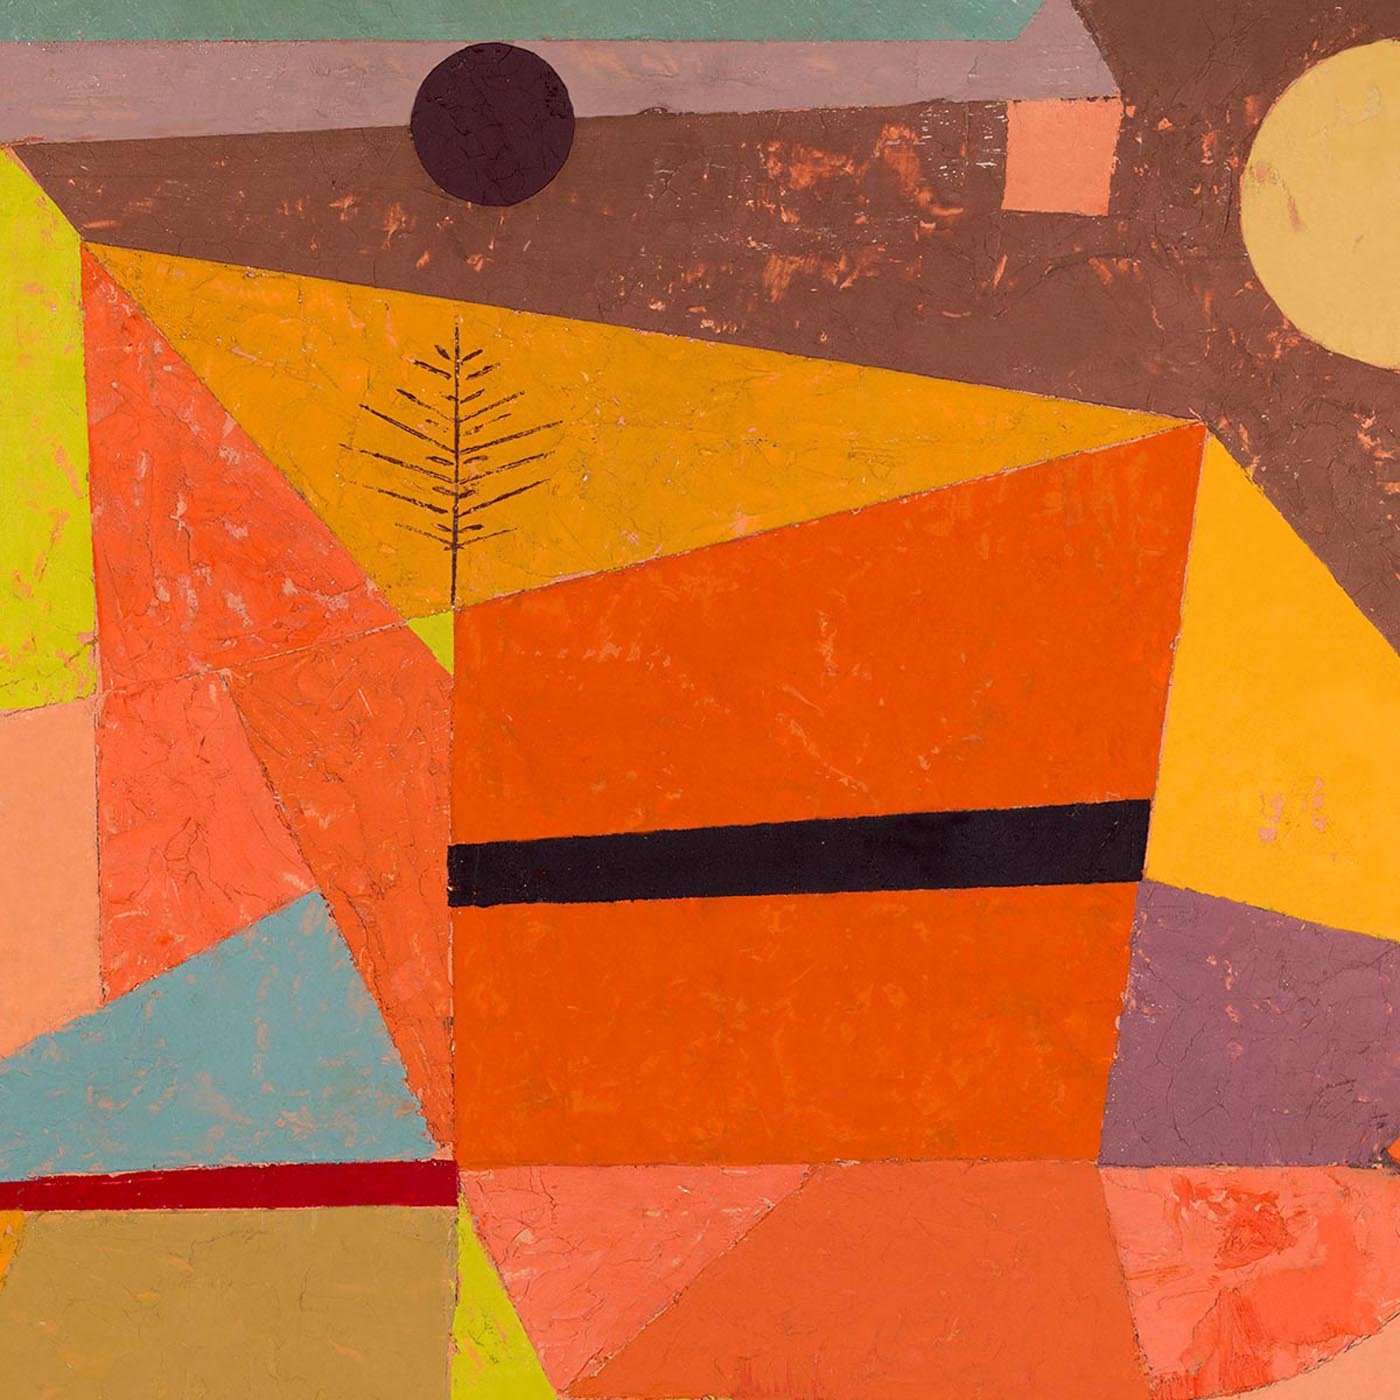 Paul Klee Joyful Mountain Art Exhibition Poster